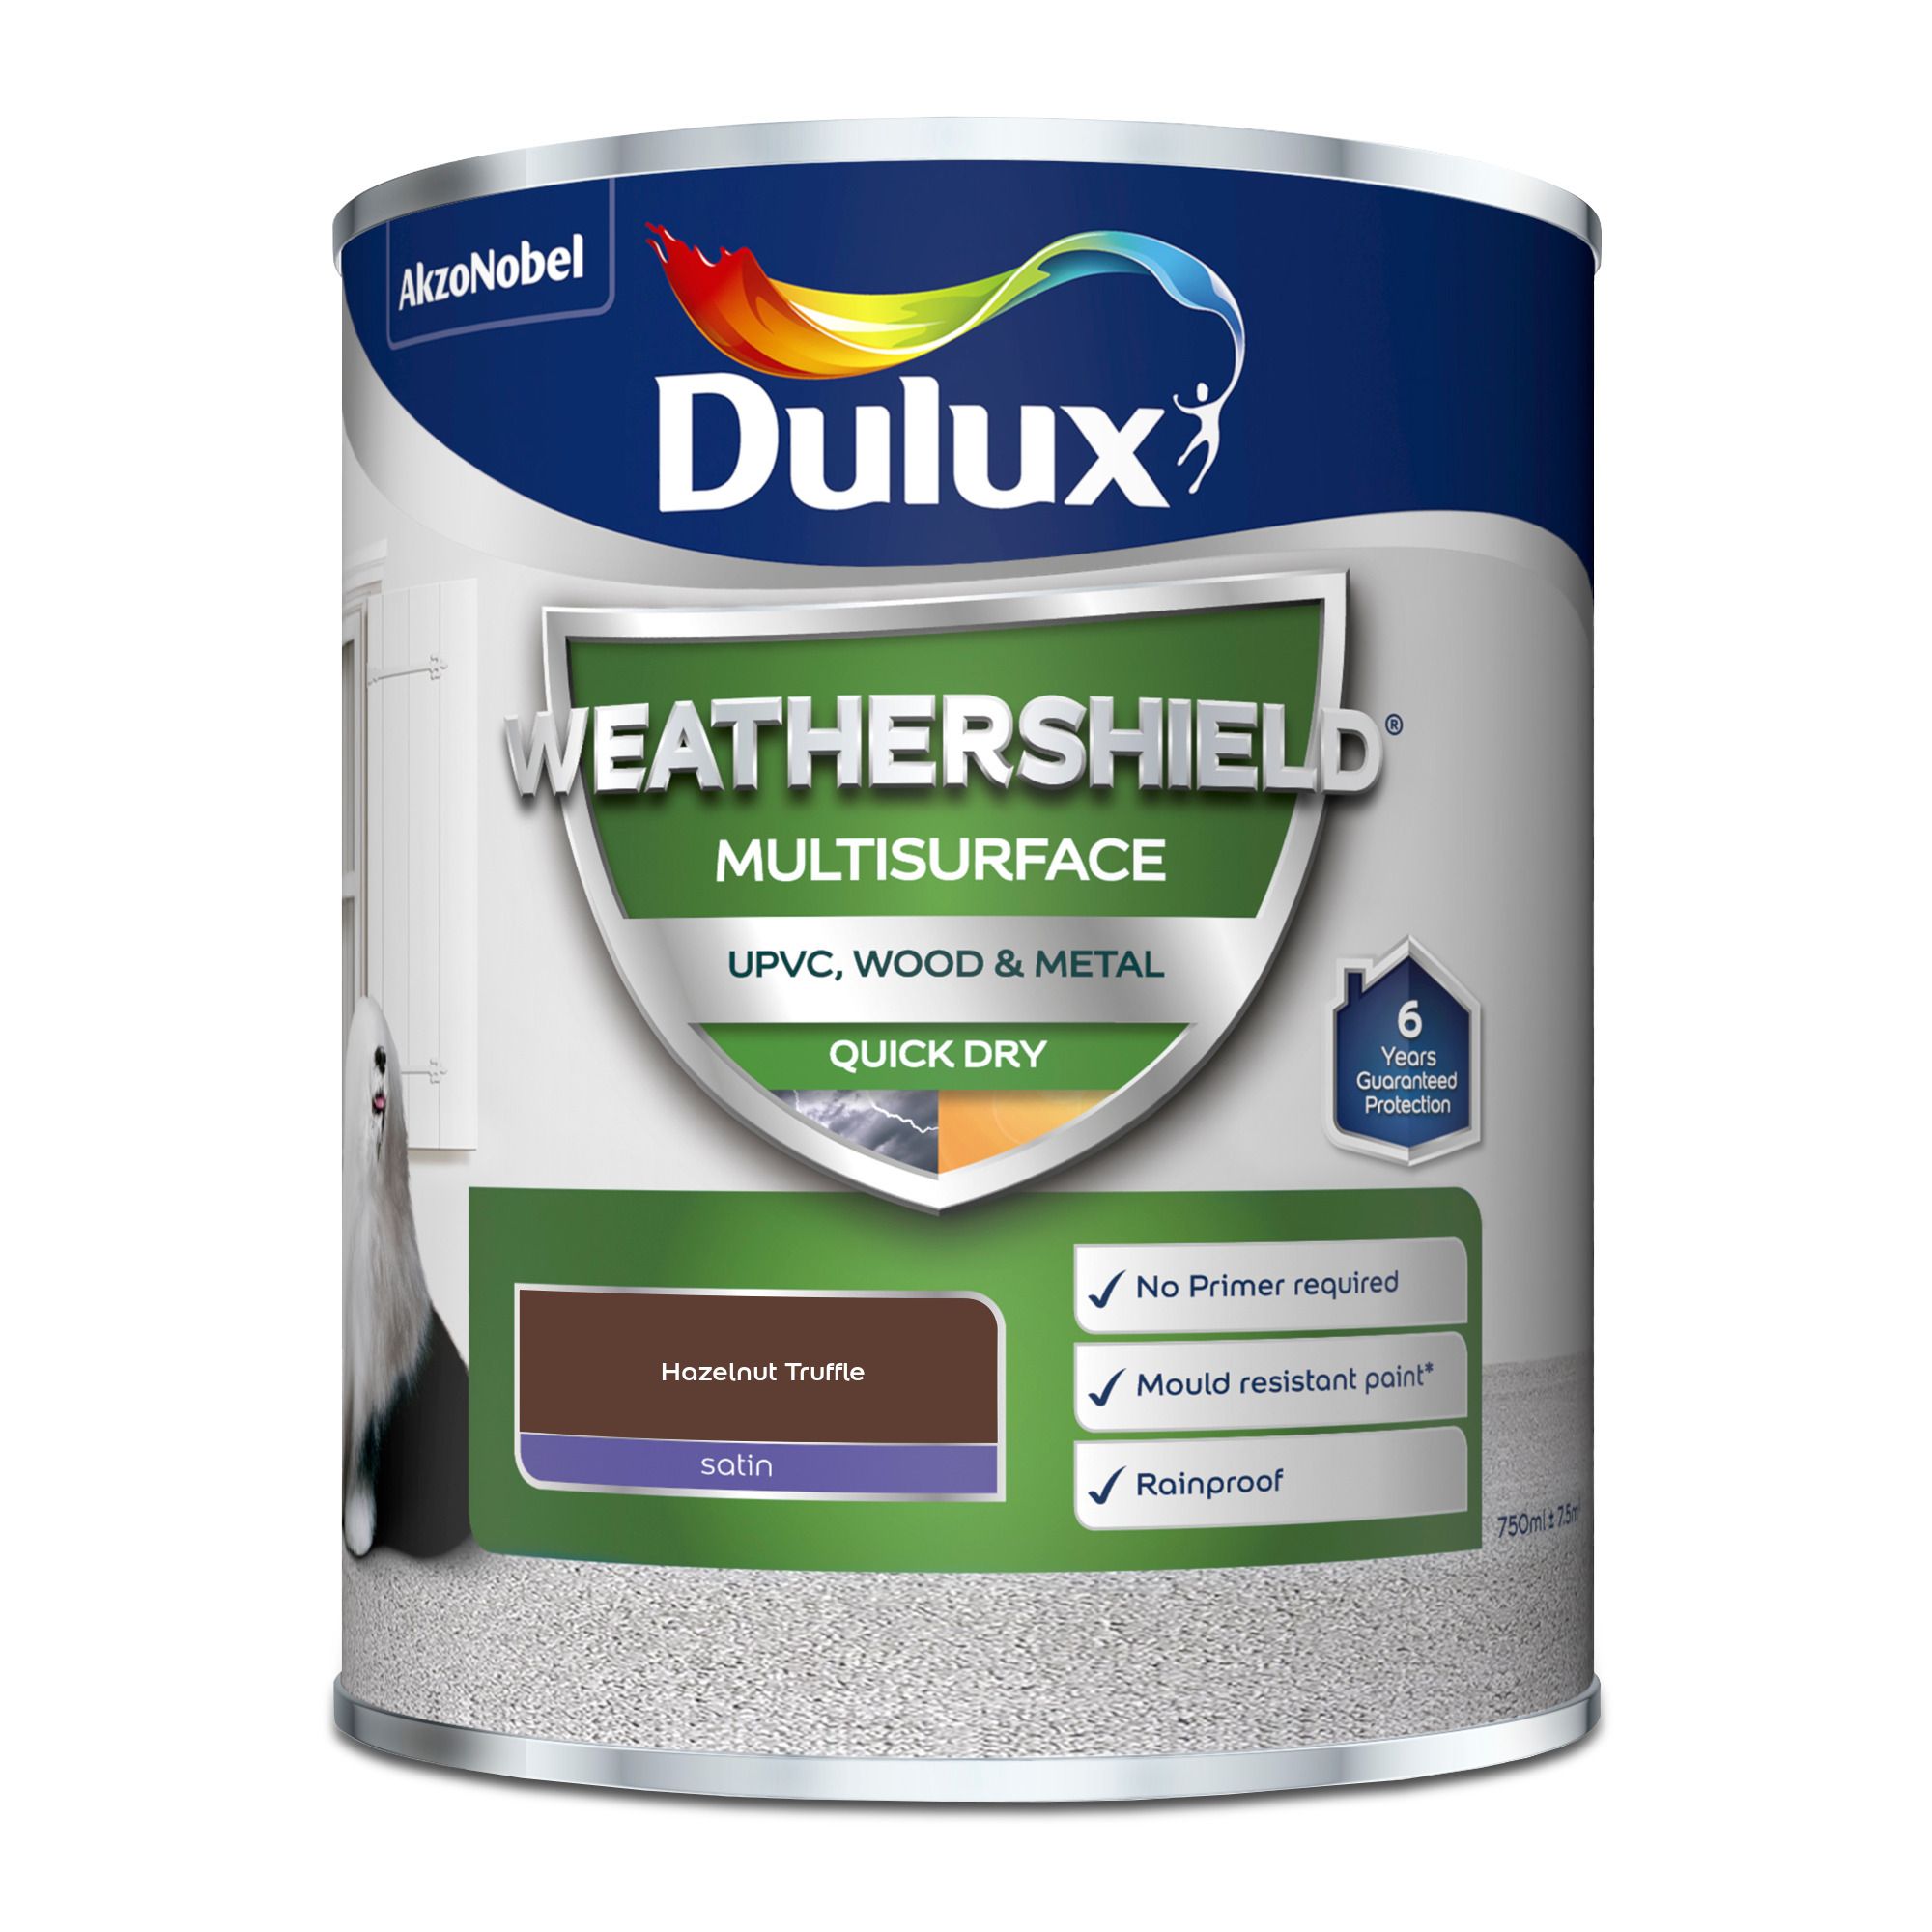 Dulux Weathershield Hazelnut Truffle Satinwood Multi-surface paint, 750ml